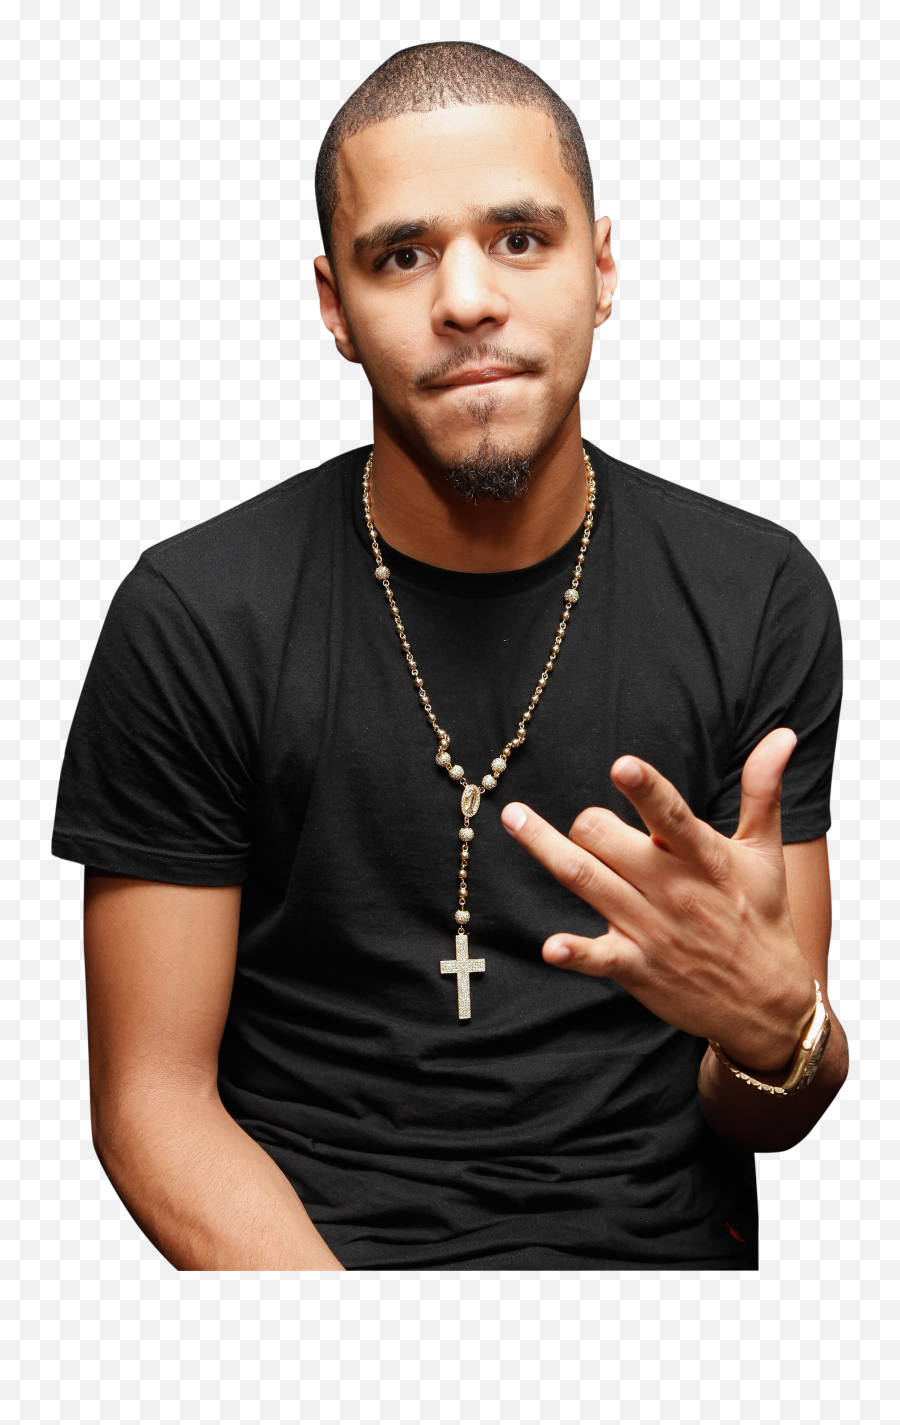 Eleventh - Transparent J Cole Face Emoji,Jay Z Png